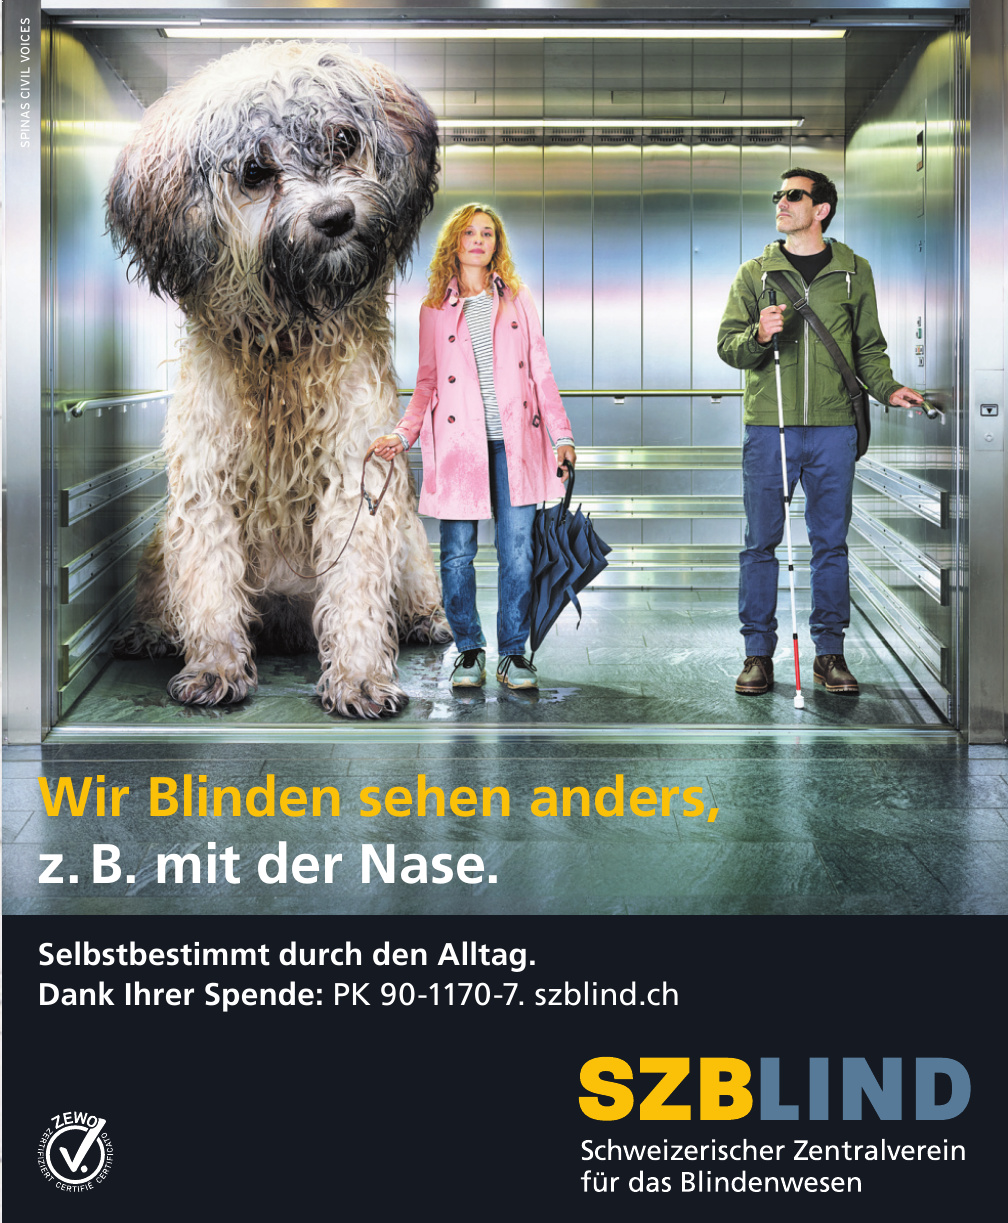 SZBLIND Schweizerischer Zentralverein für das Blindenwesen